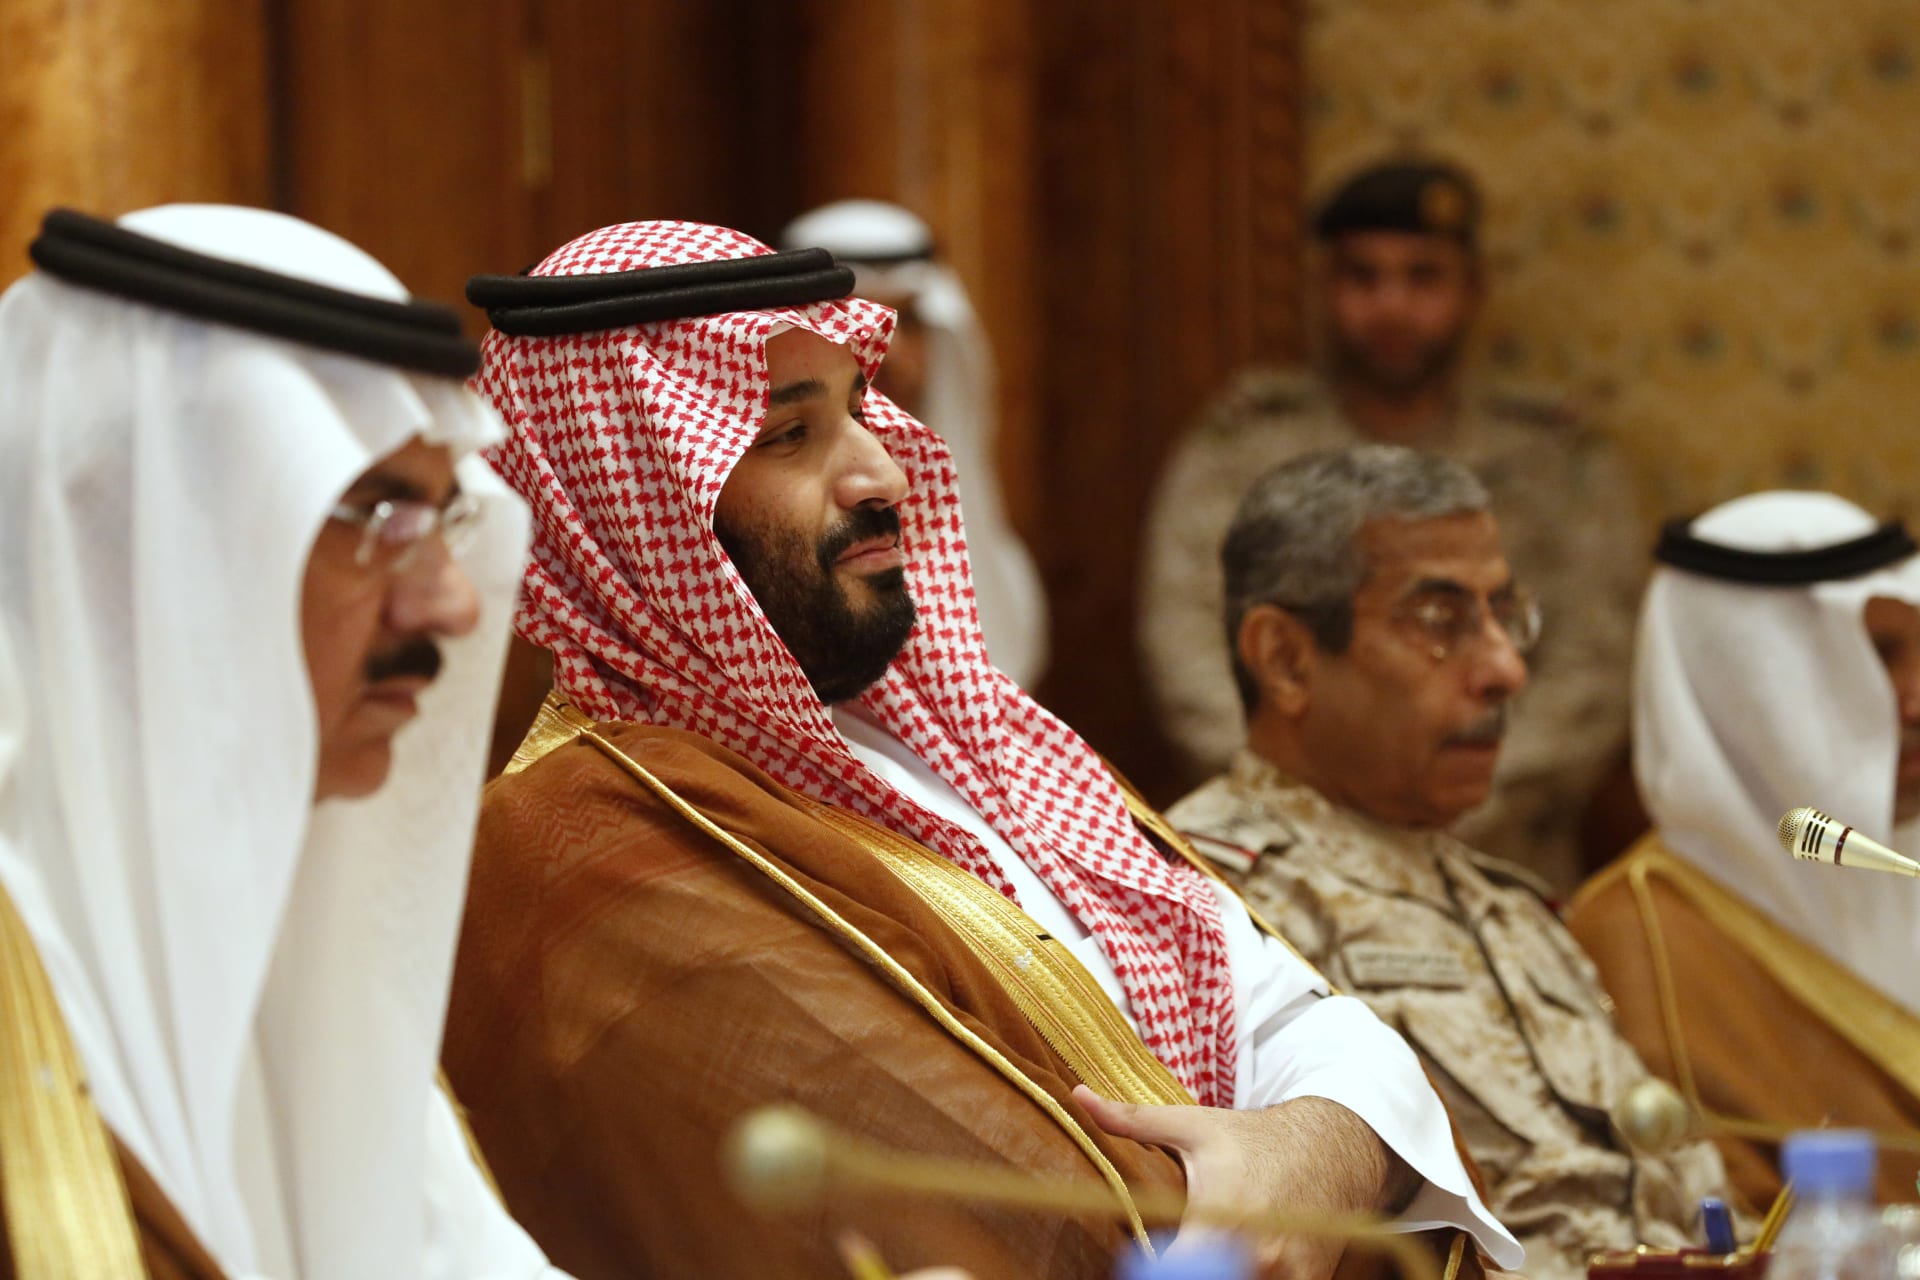 مسؤول سعودي: ولي العهد استدعاني بسبب تعطل "ثلاث لمبات" وهذا ما أراد أن يذكرني به